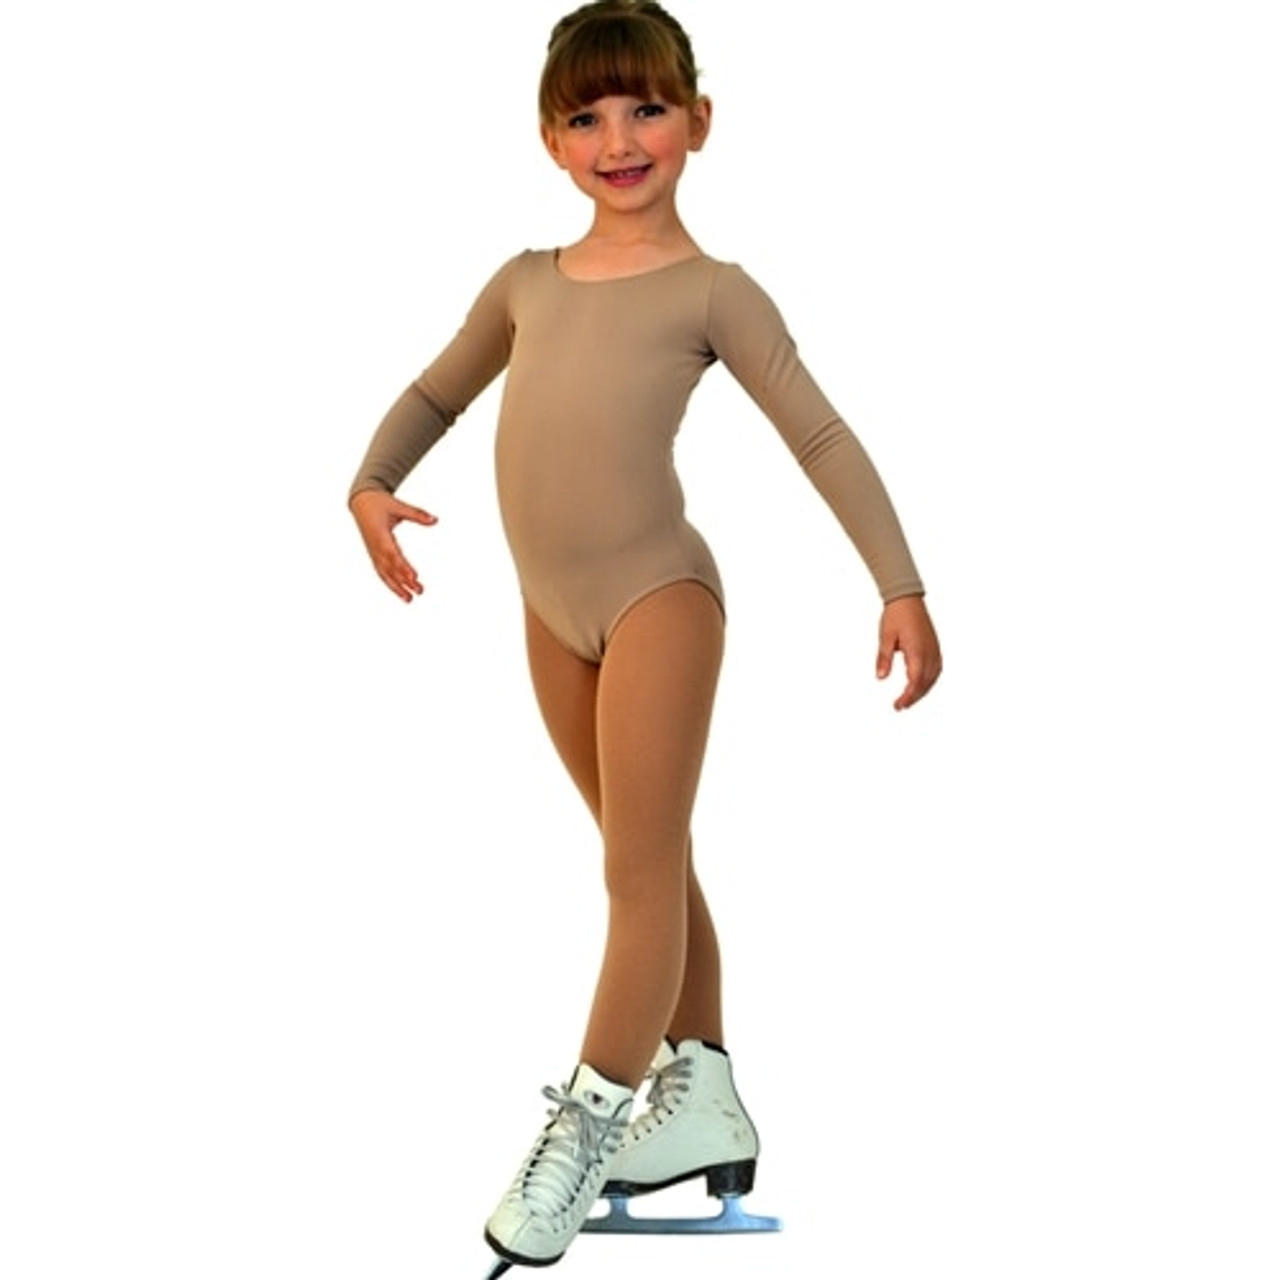 Figure Skating Apparel, BL02, Chloe Noel